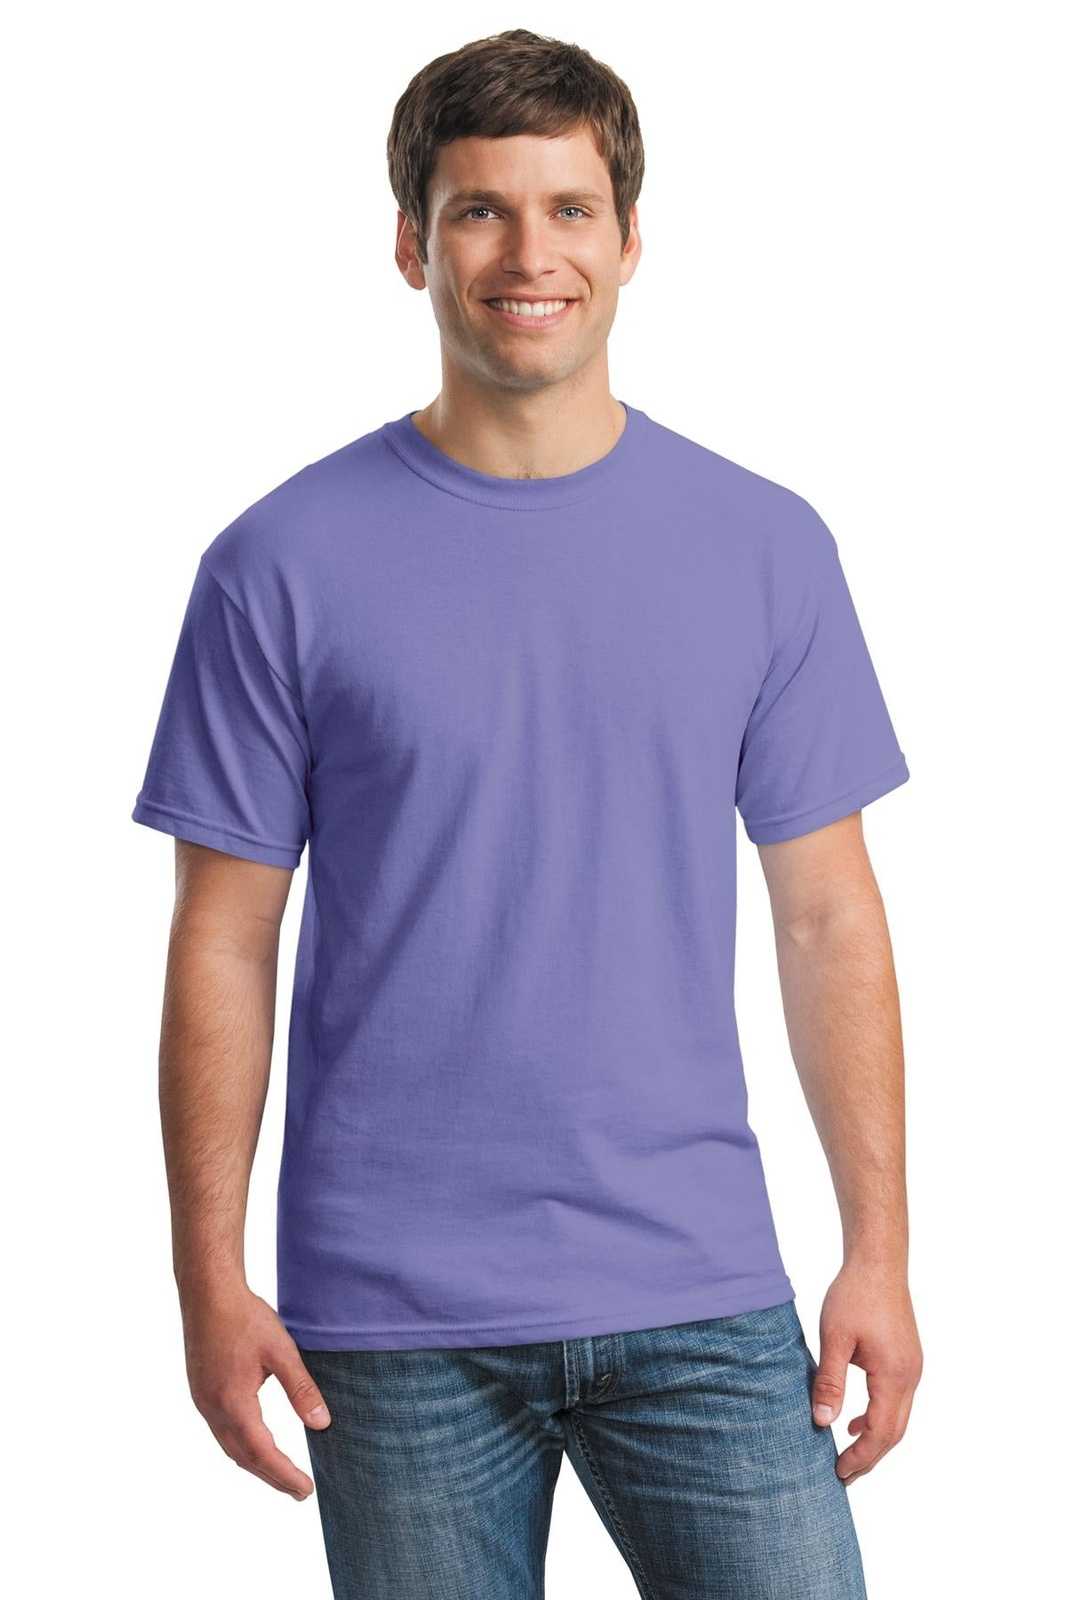 Gildan 5000 Heavy Cotton 100% Cotton T-Shirt - Violet - HIT a Double